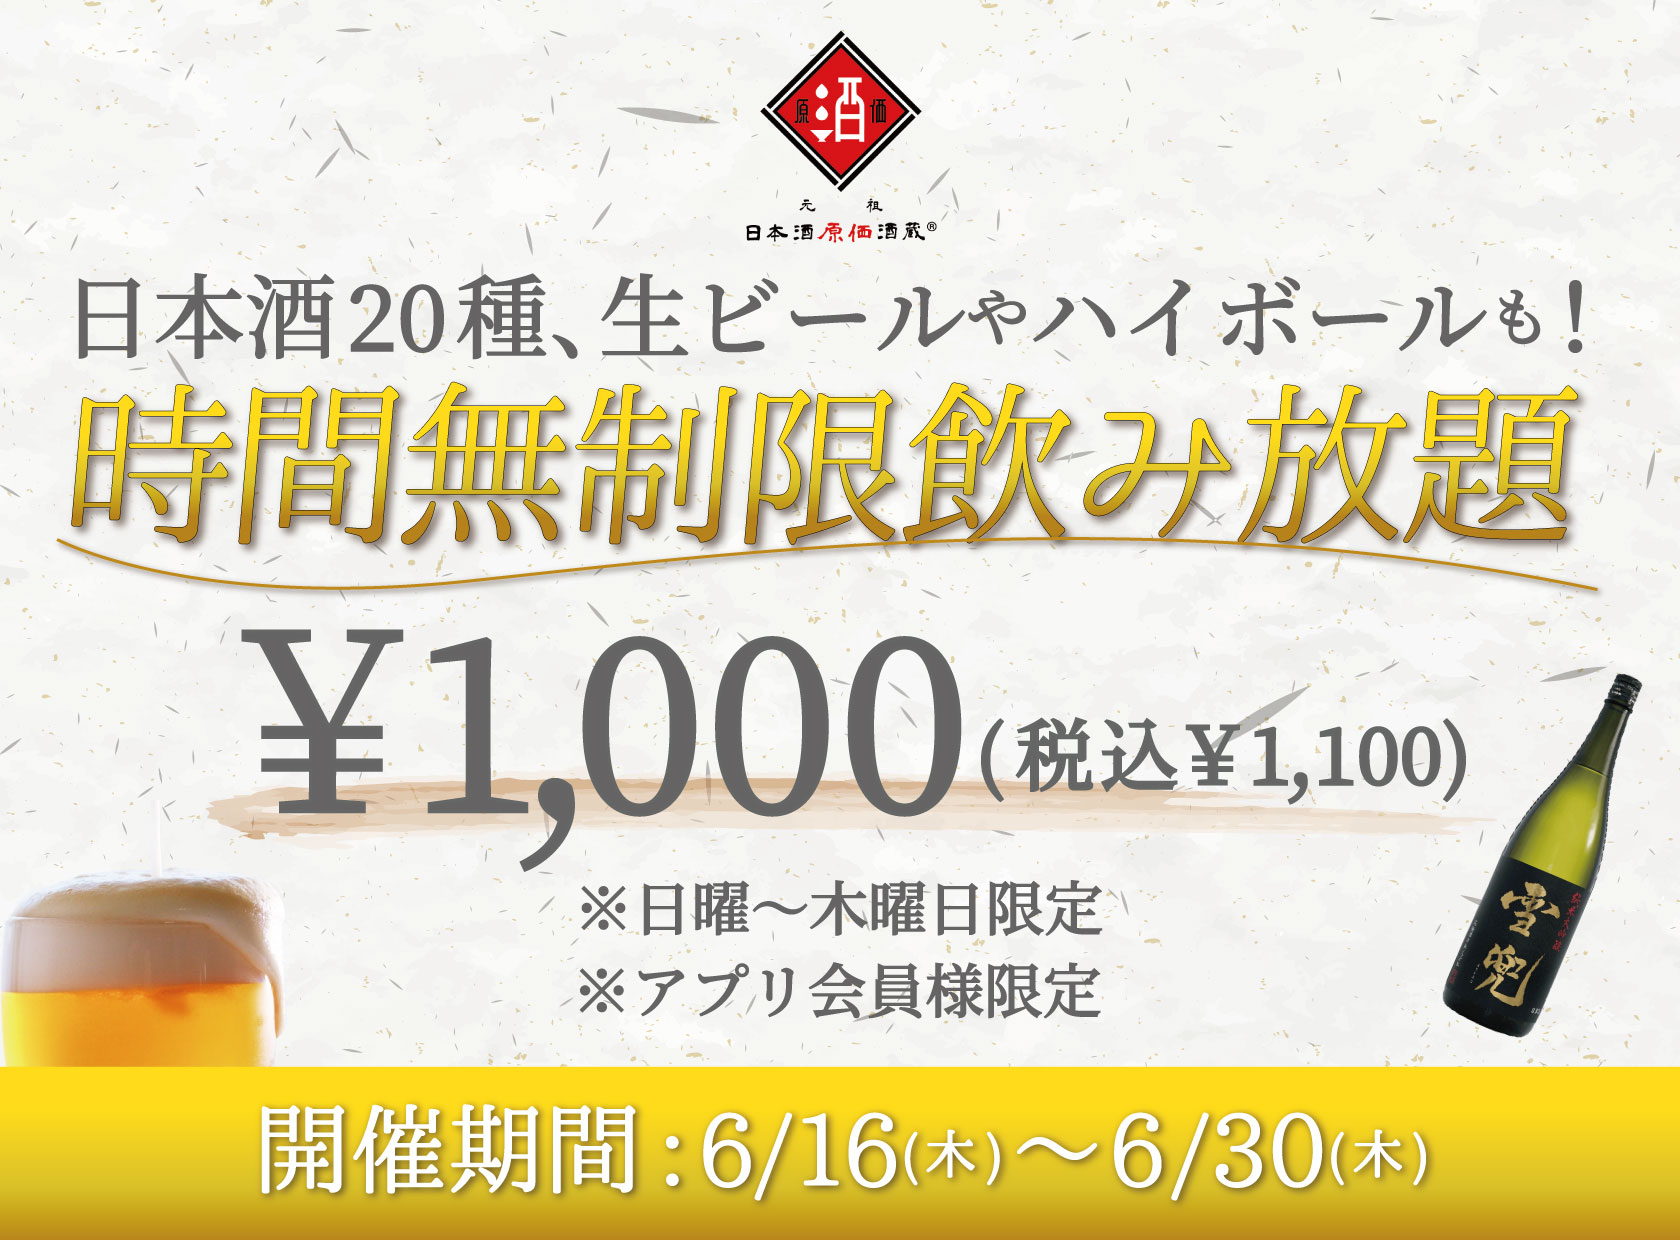 日本酒原価酒蔵、1100円で時間無制限の日本酒飲み放題